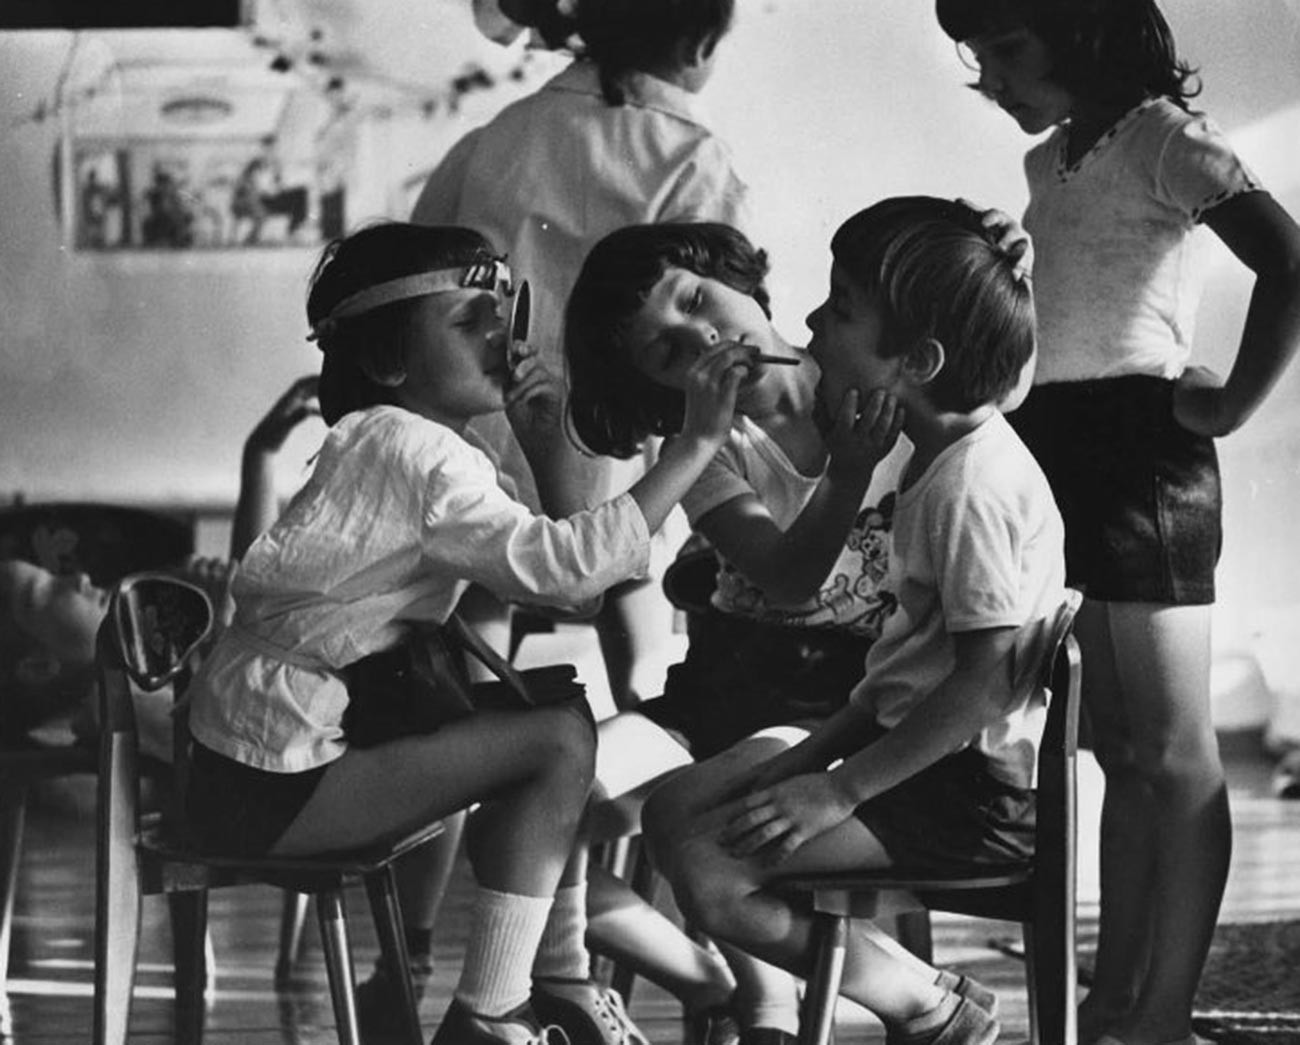 Igranje zobozdravnikov v vrtcu, 1985


